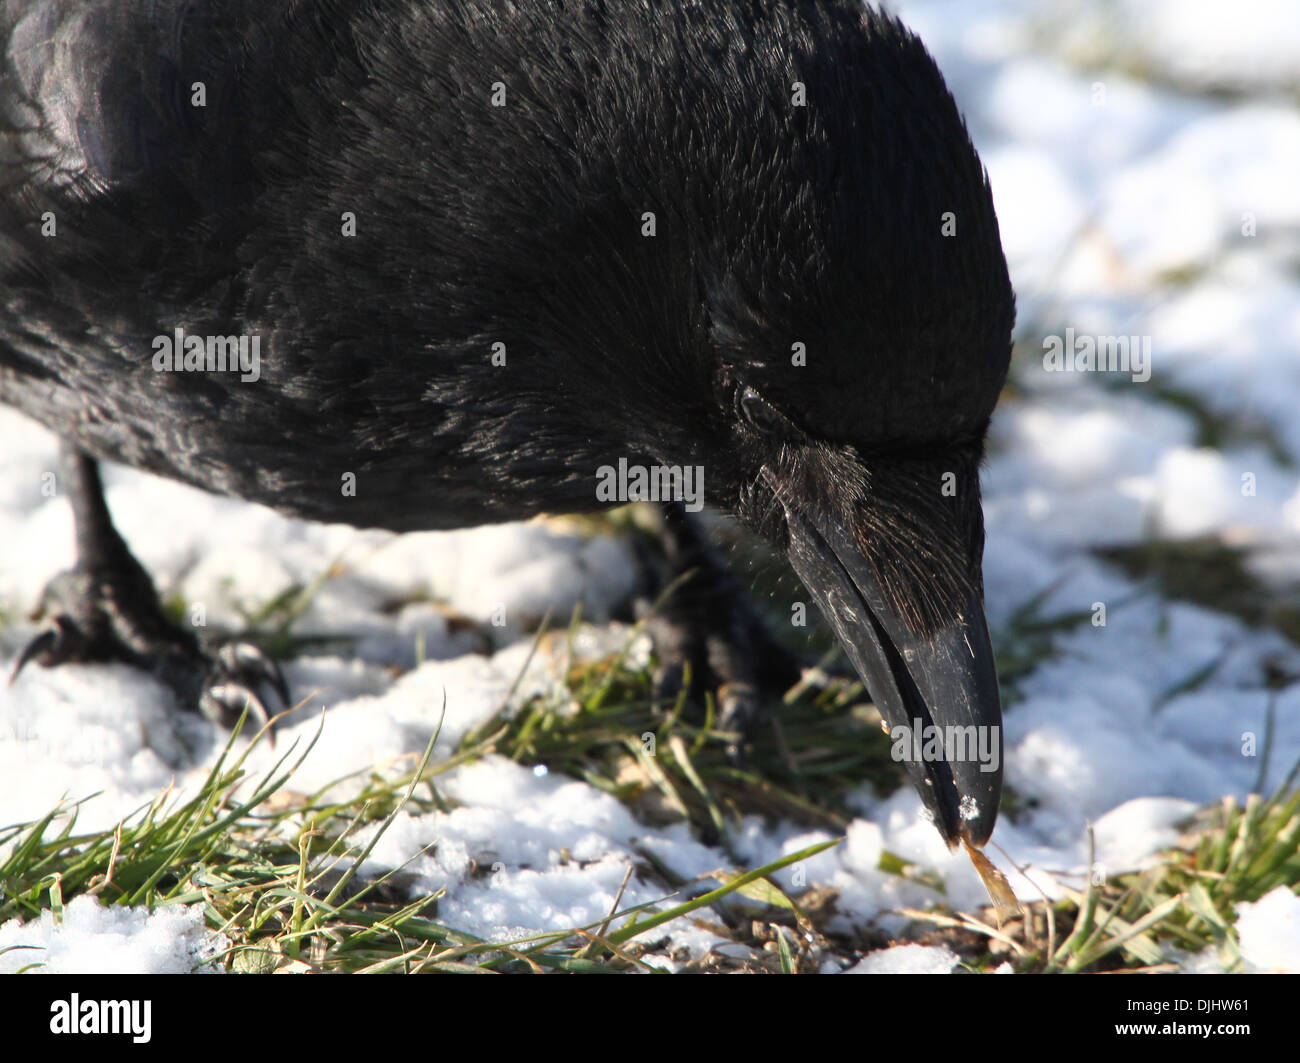 La récolte d'une extrême corneille noire (Corvus corone) en quête de nourriture dans la neige Banque D'Images